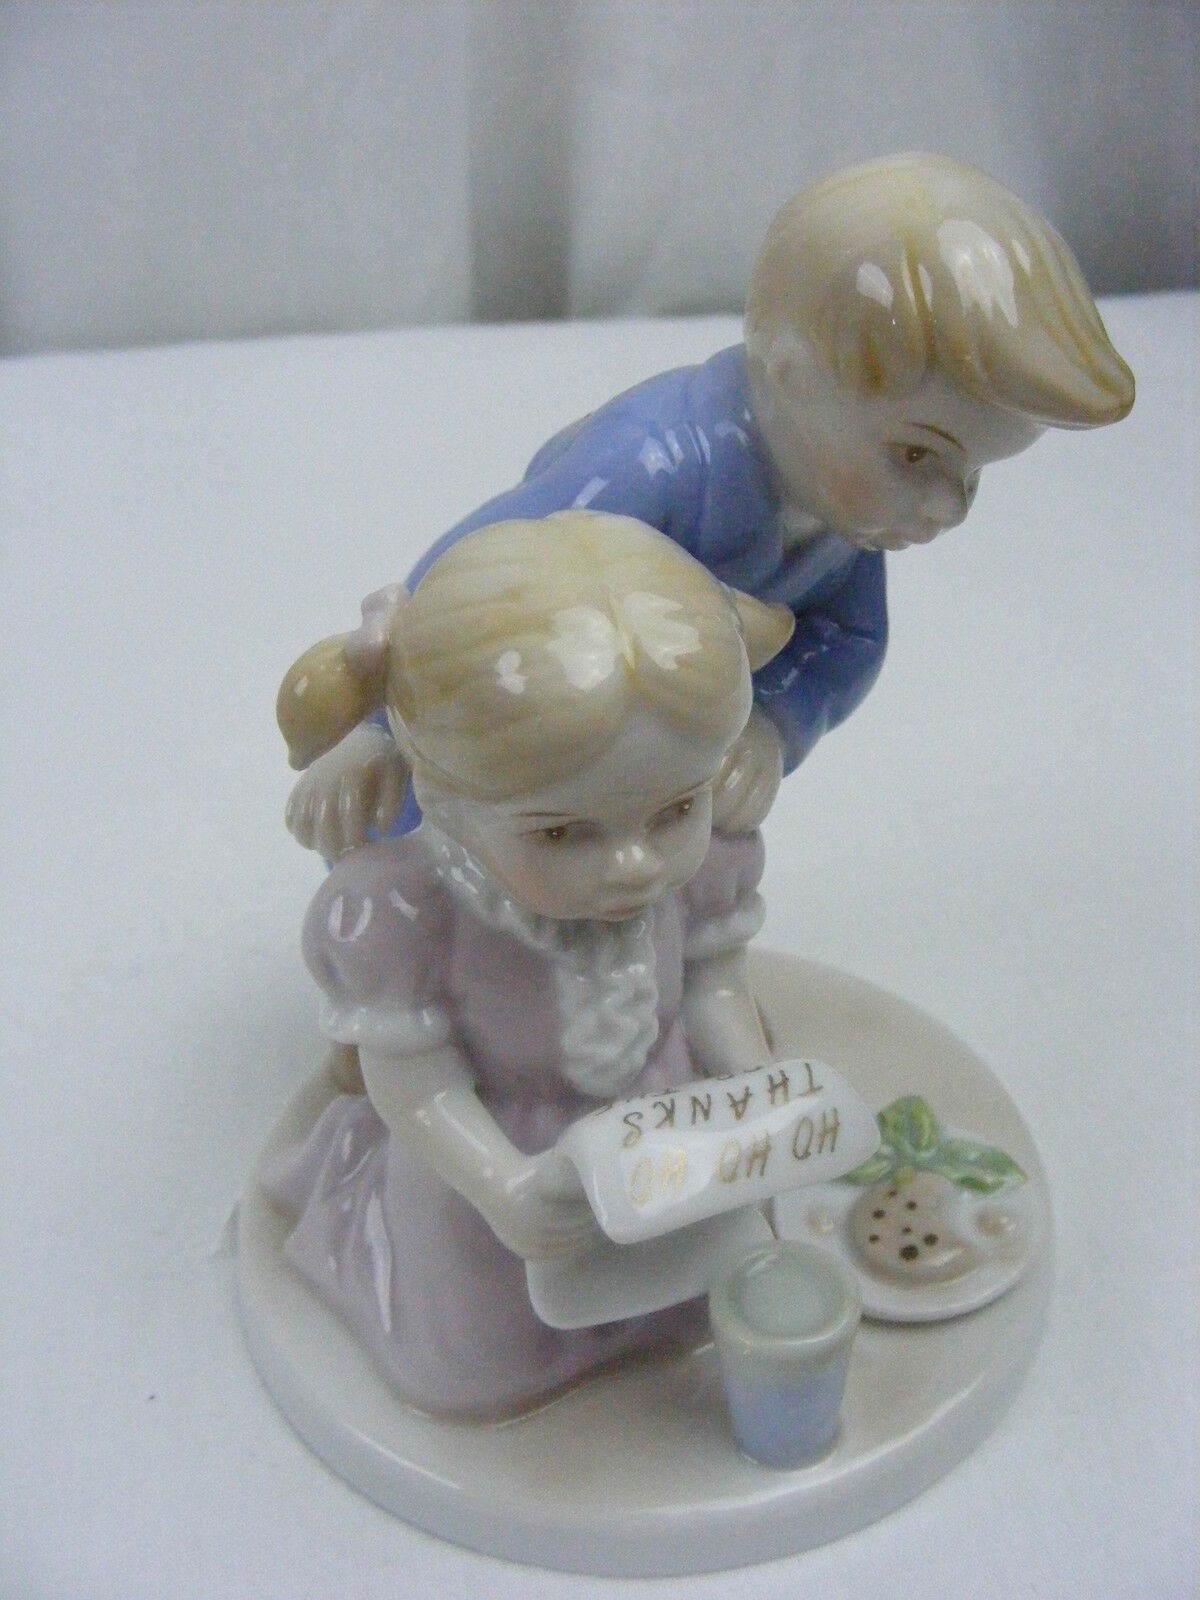 Vintage Marbella Collection Porcelain Figurine Boy Girl Letter from Santa 19-4